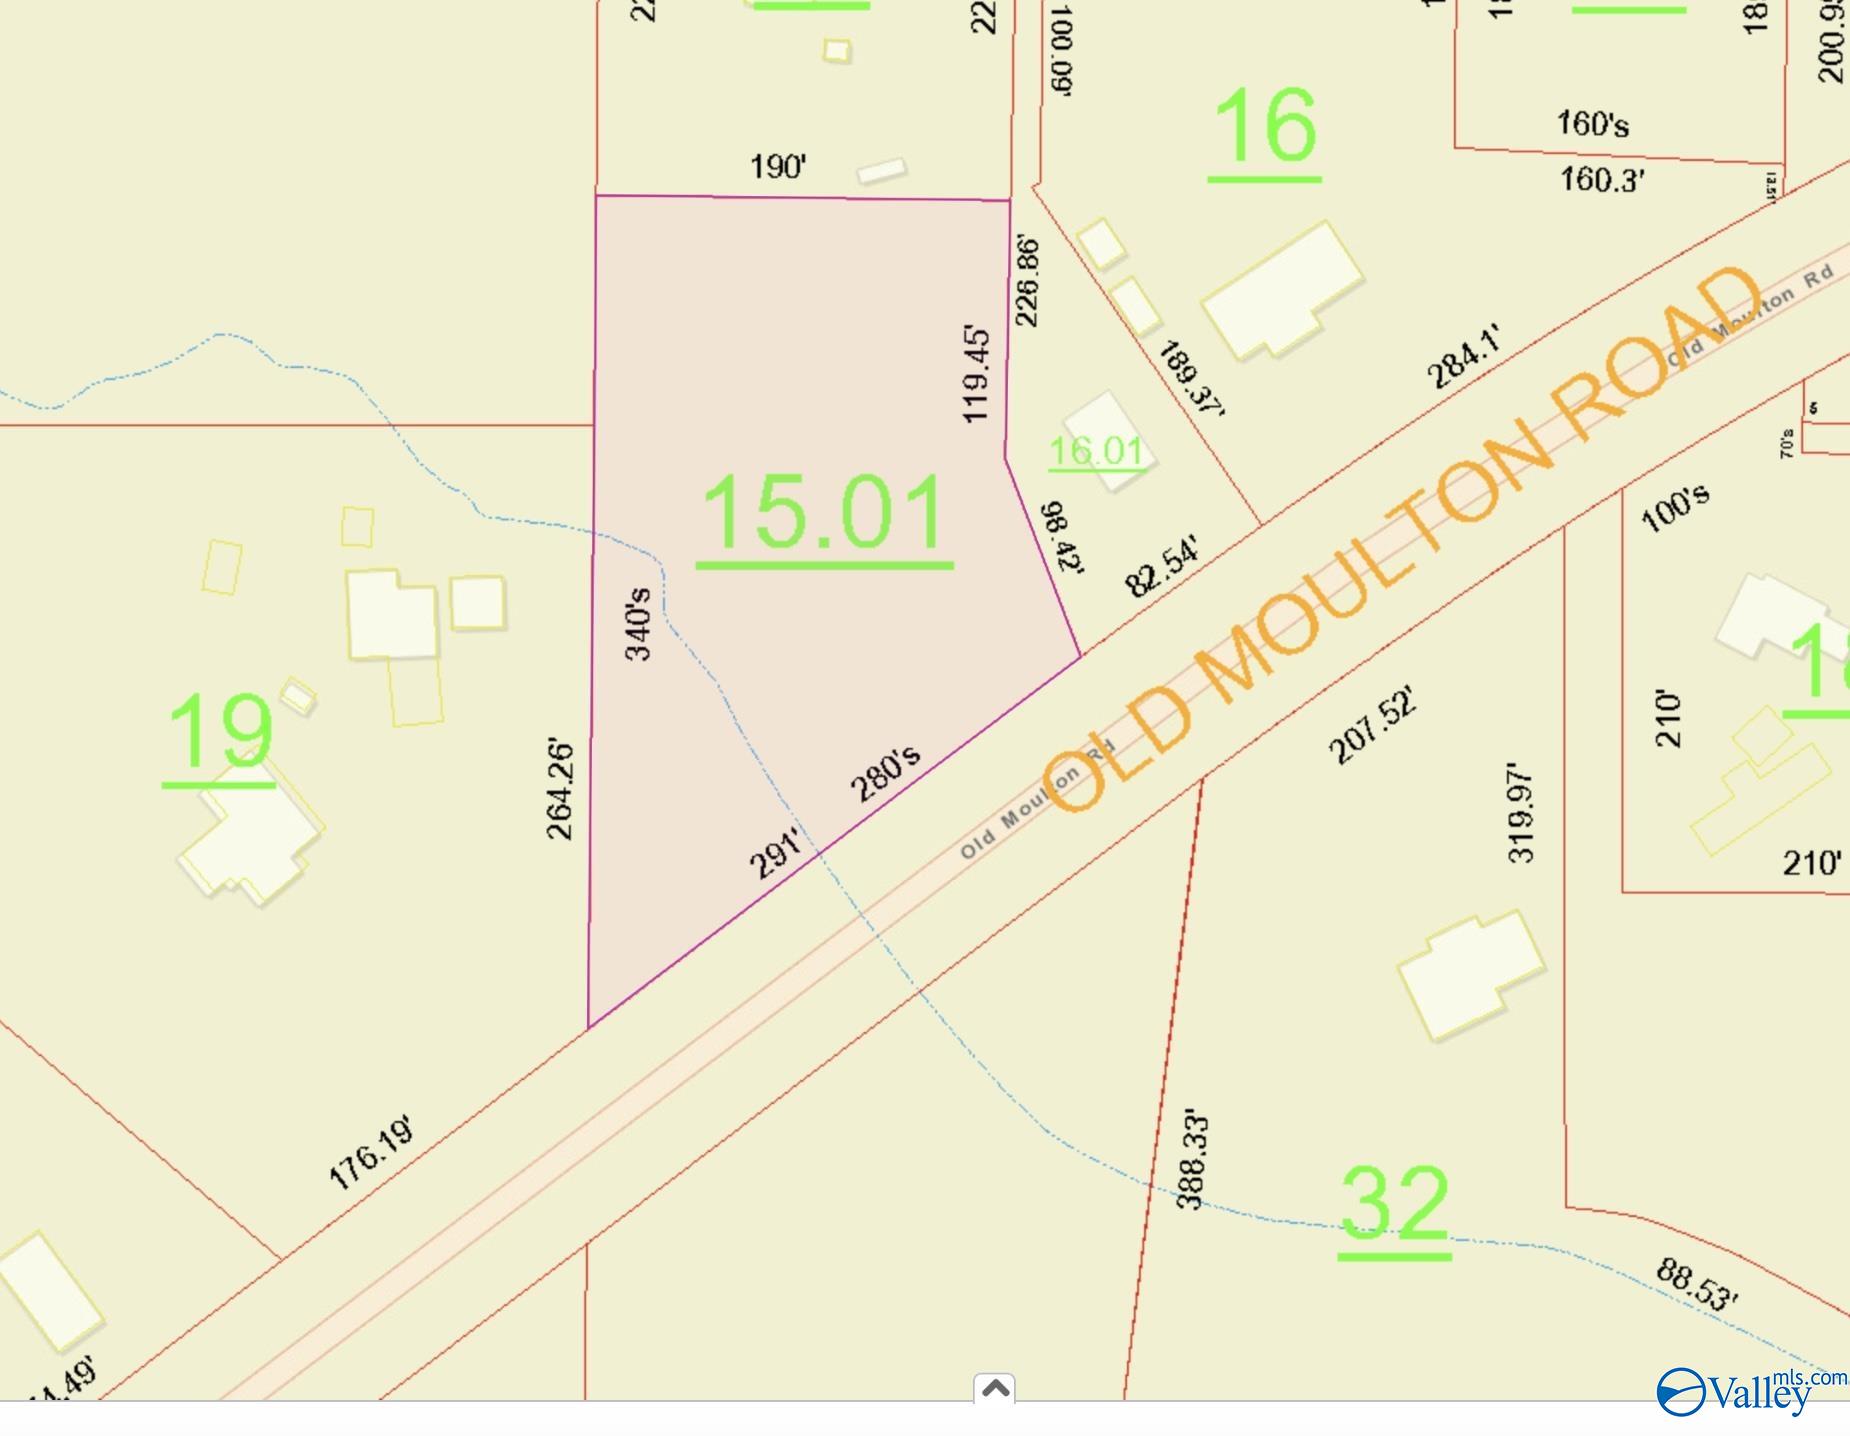 Property: 1.5 Acres Old Moulton Road,Decatur, AL